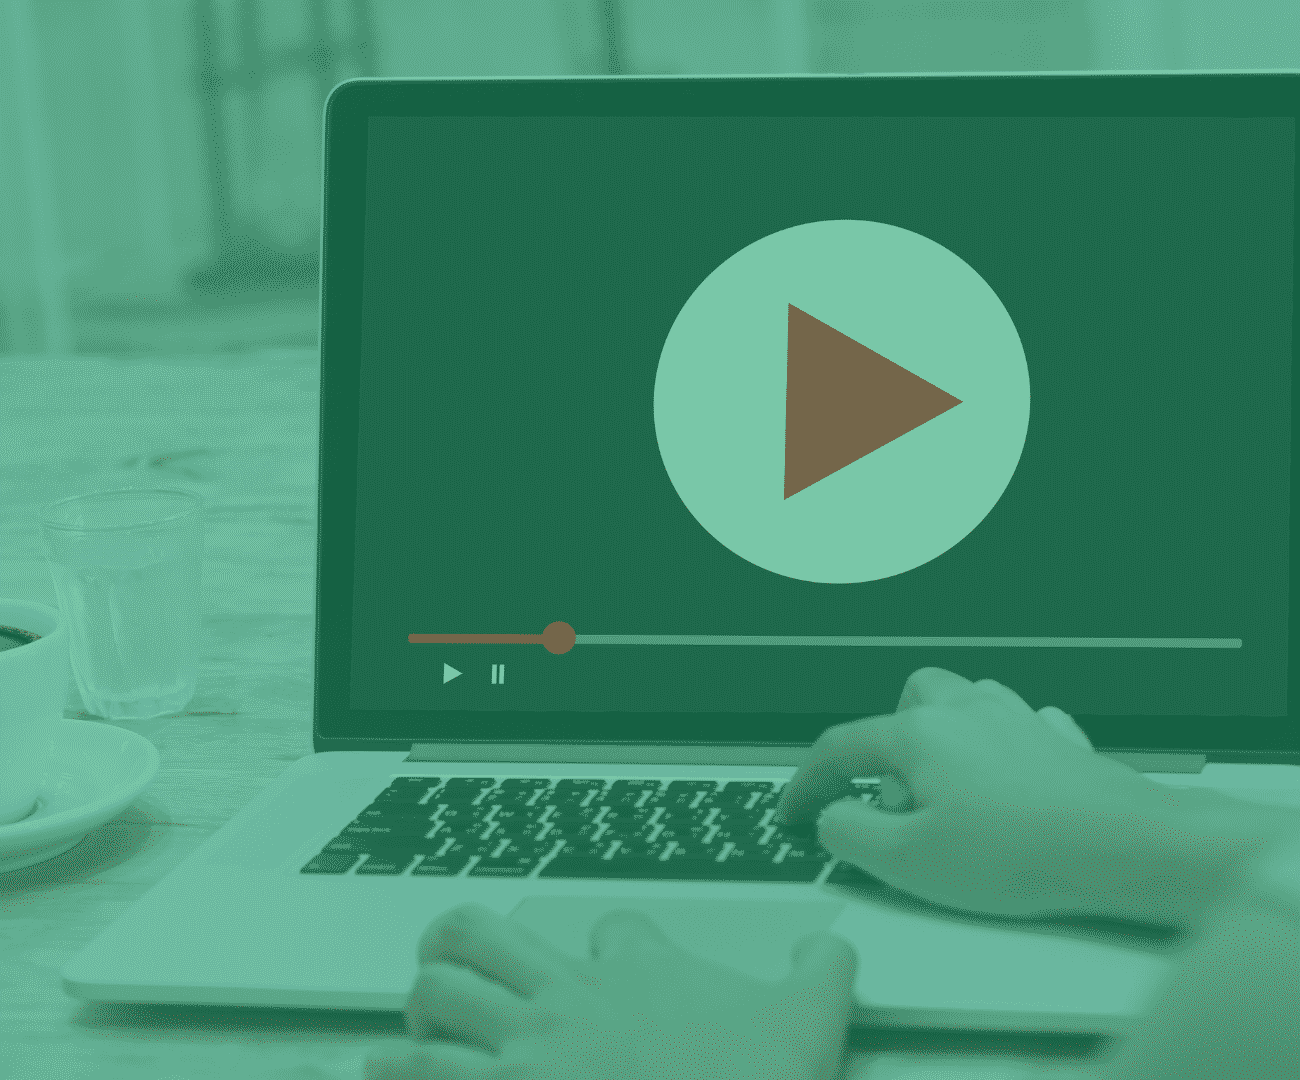 Des vidéos à partir de banques de vidéos – de quoi s’agit t-il?